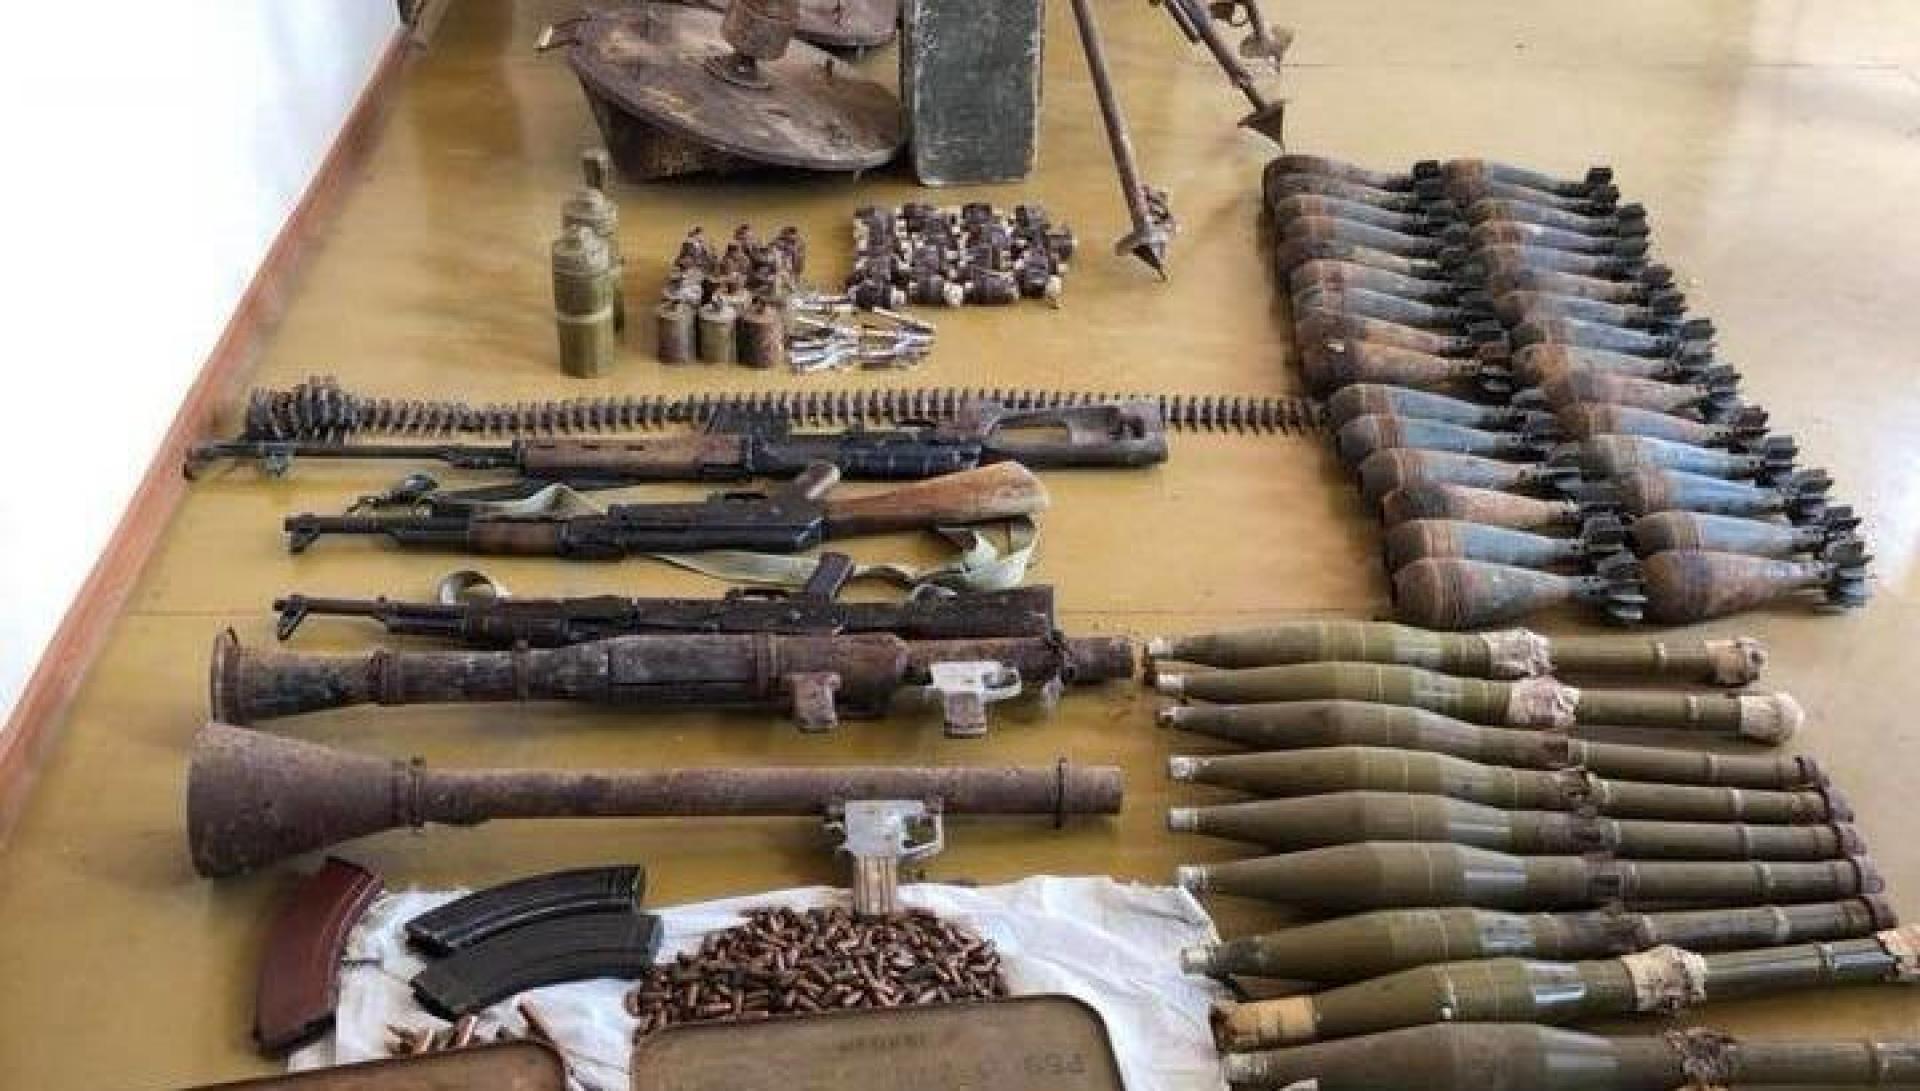 Արցախյան պատերազմի համար նախատեսված զենք-զինամթերքն ապօրինի Հայաստան տեղափոխելու համար դատի է տրվել 54 անձ